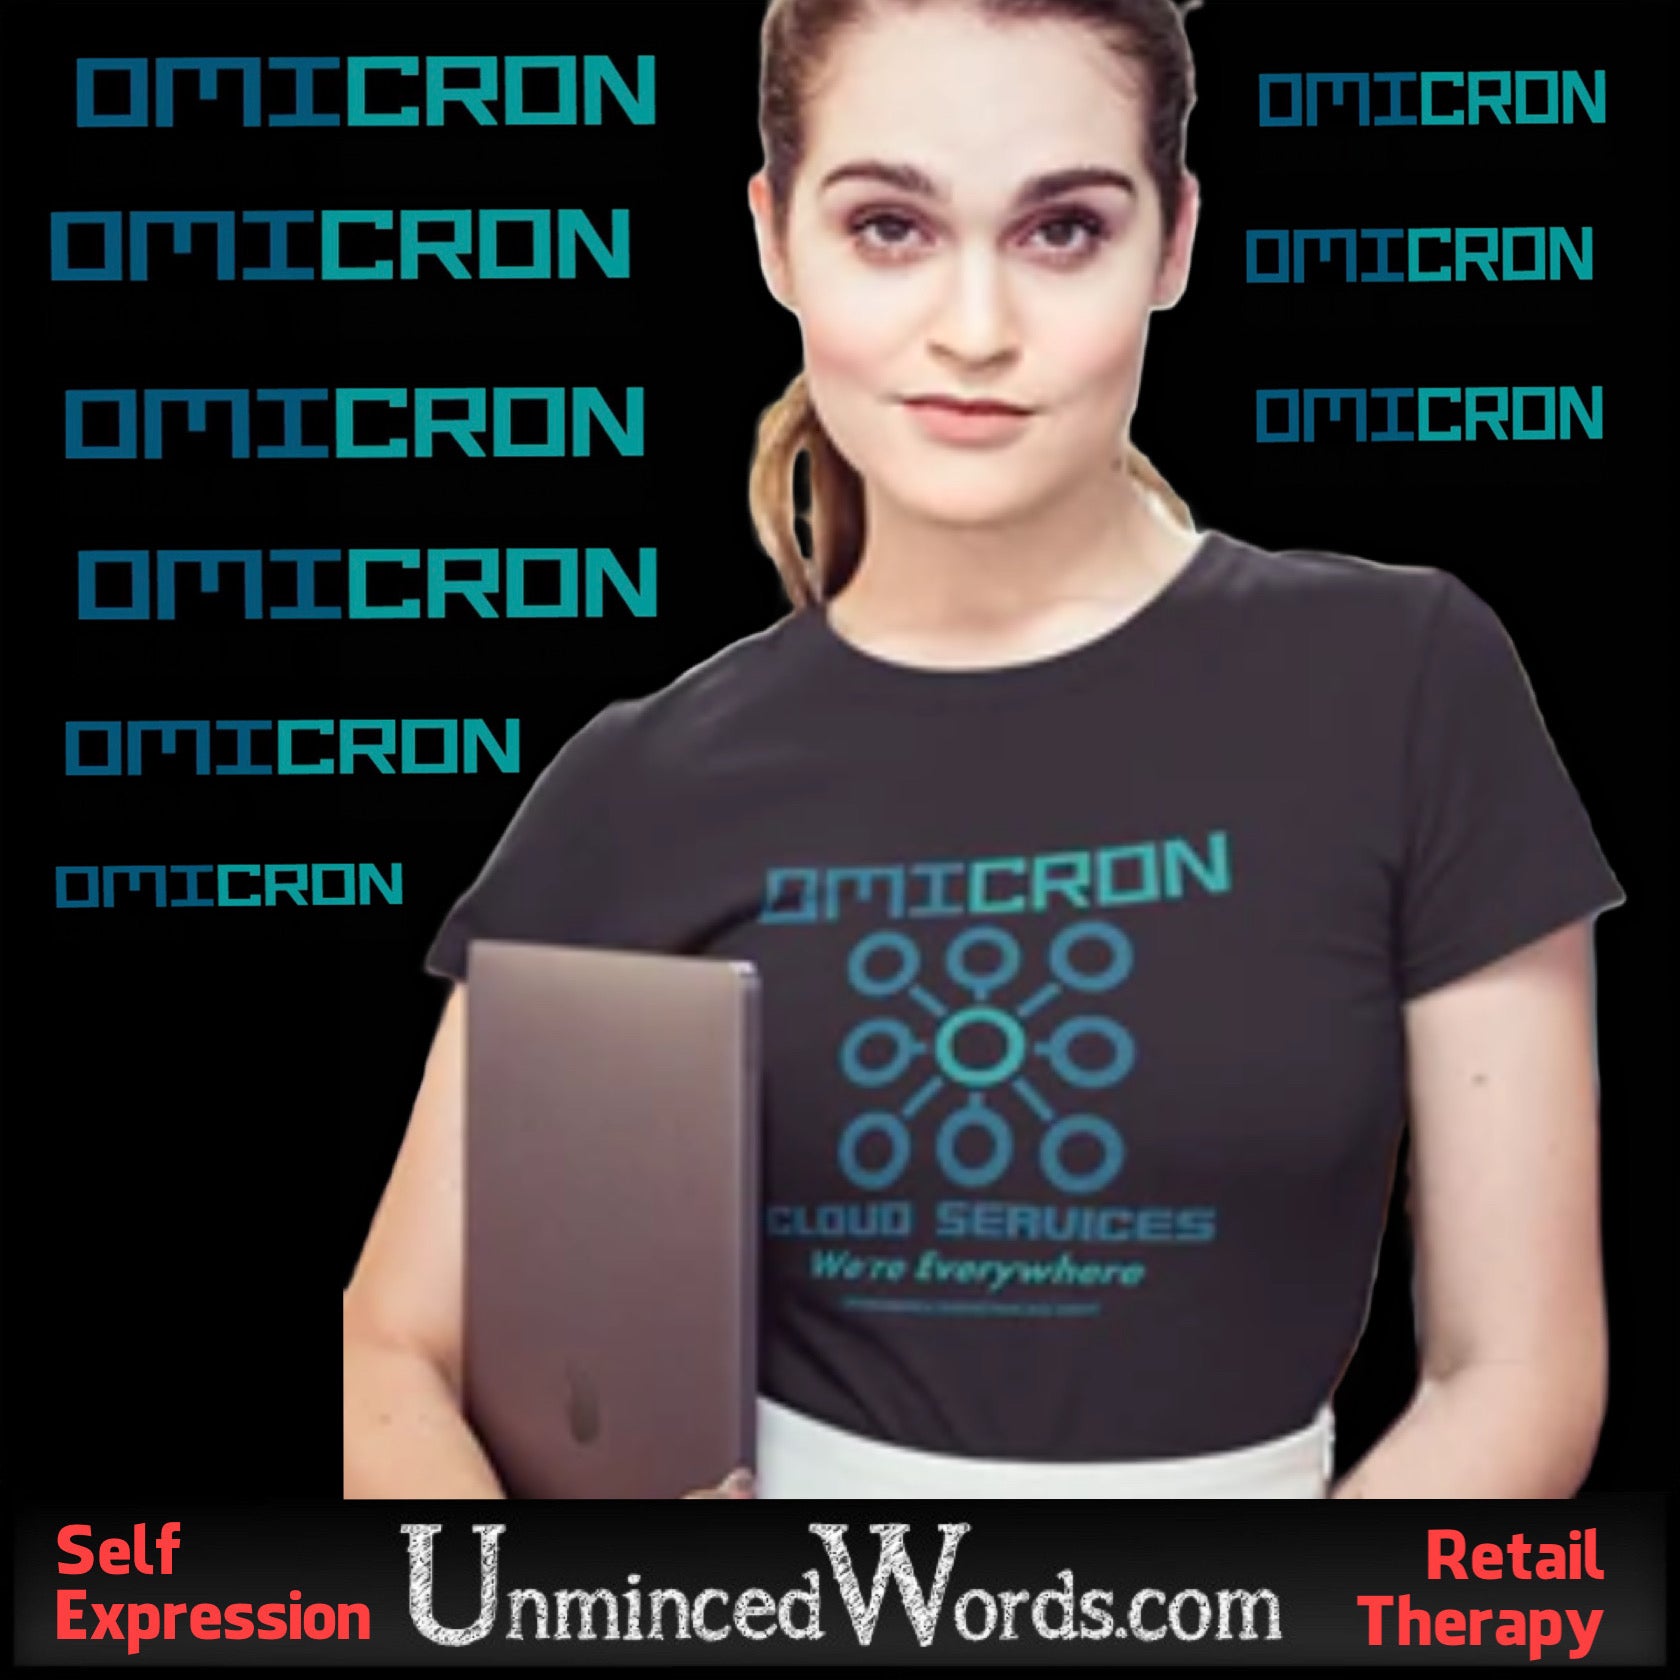 I created a false Omicron company design